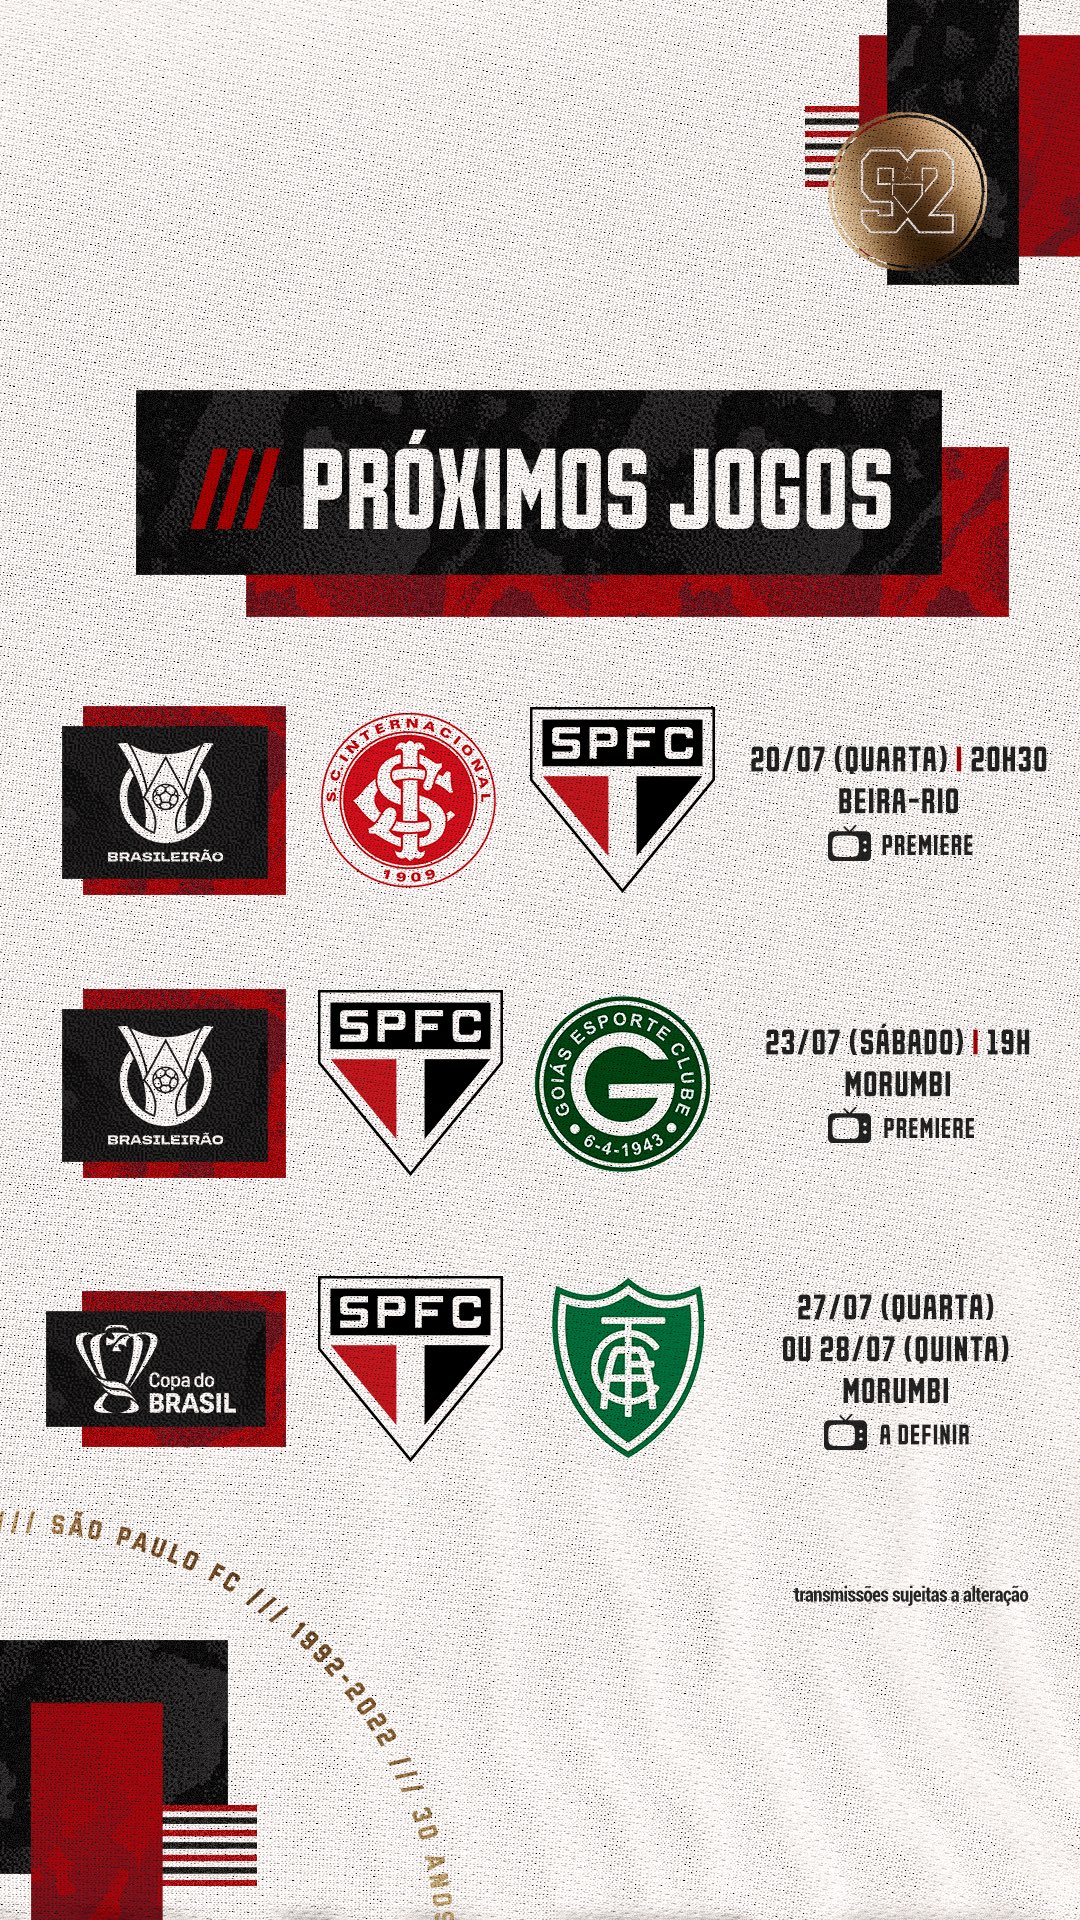 Próximos jogos do São Paulo: data, horário e onde assistir?